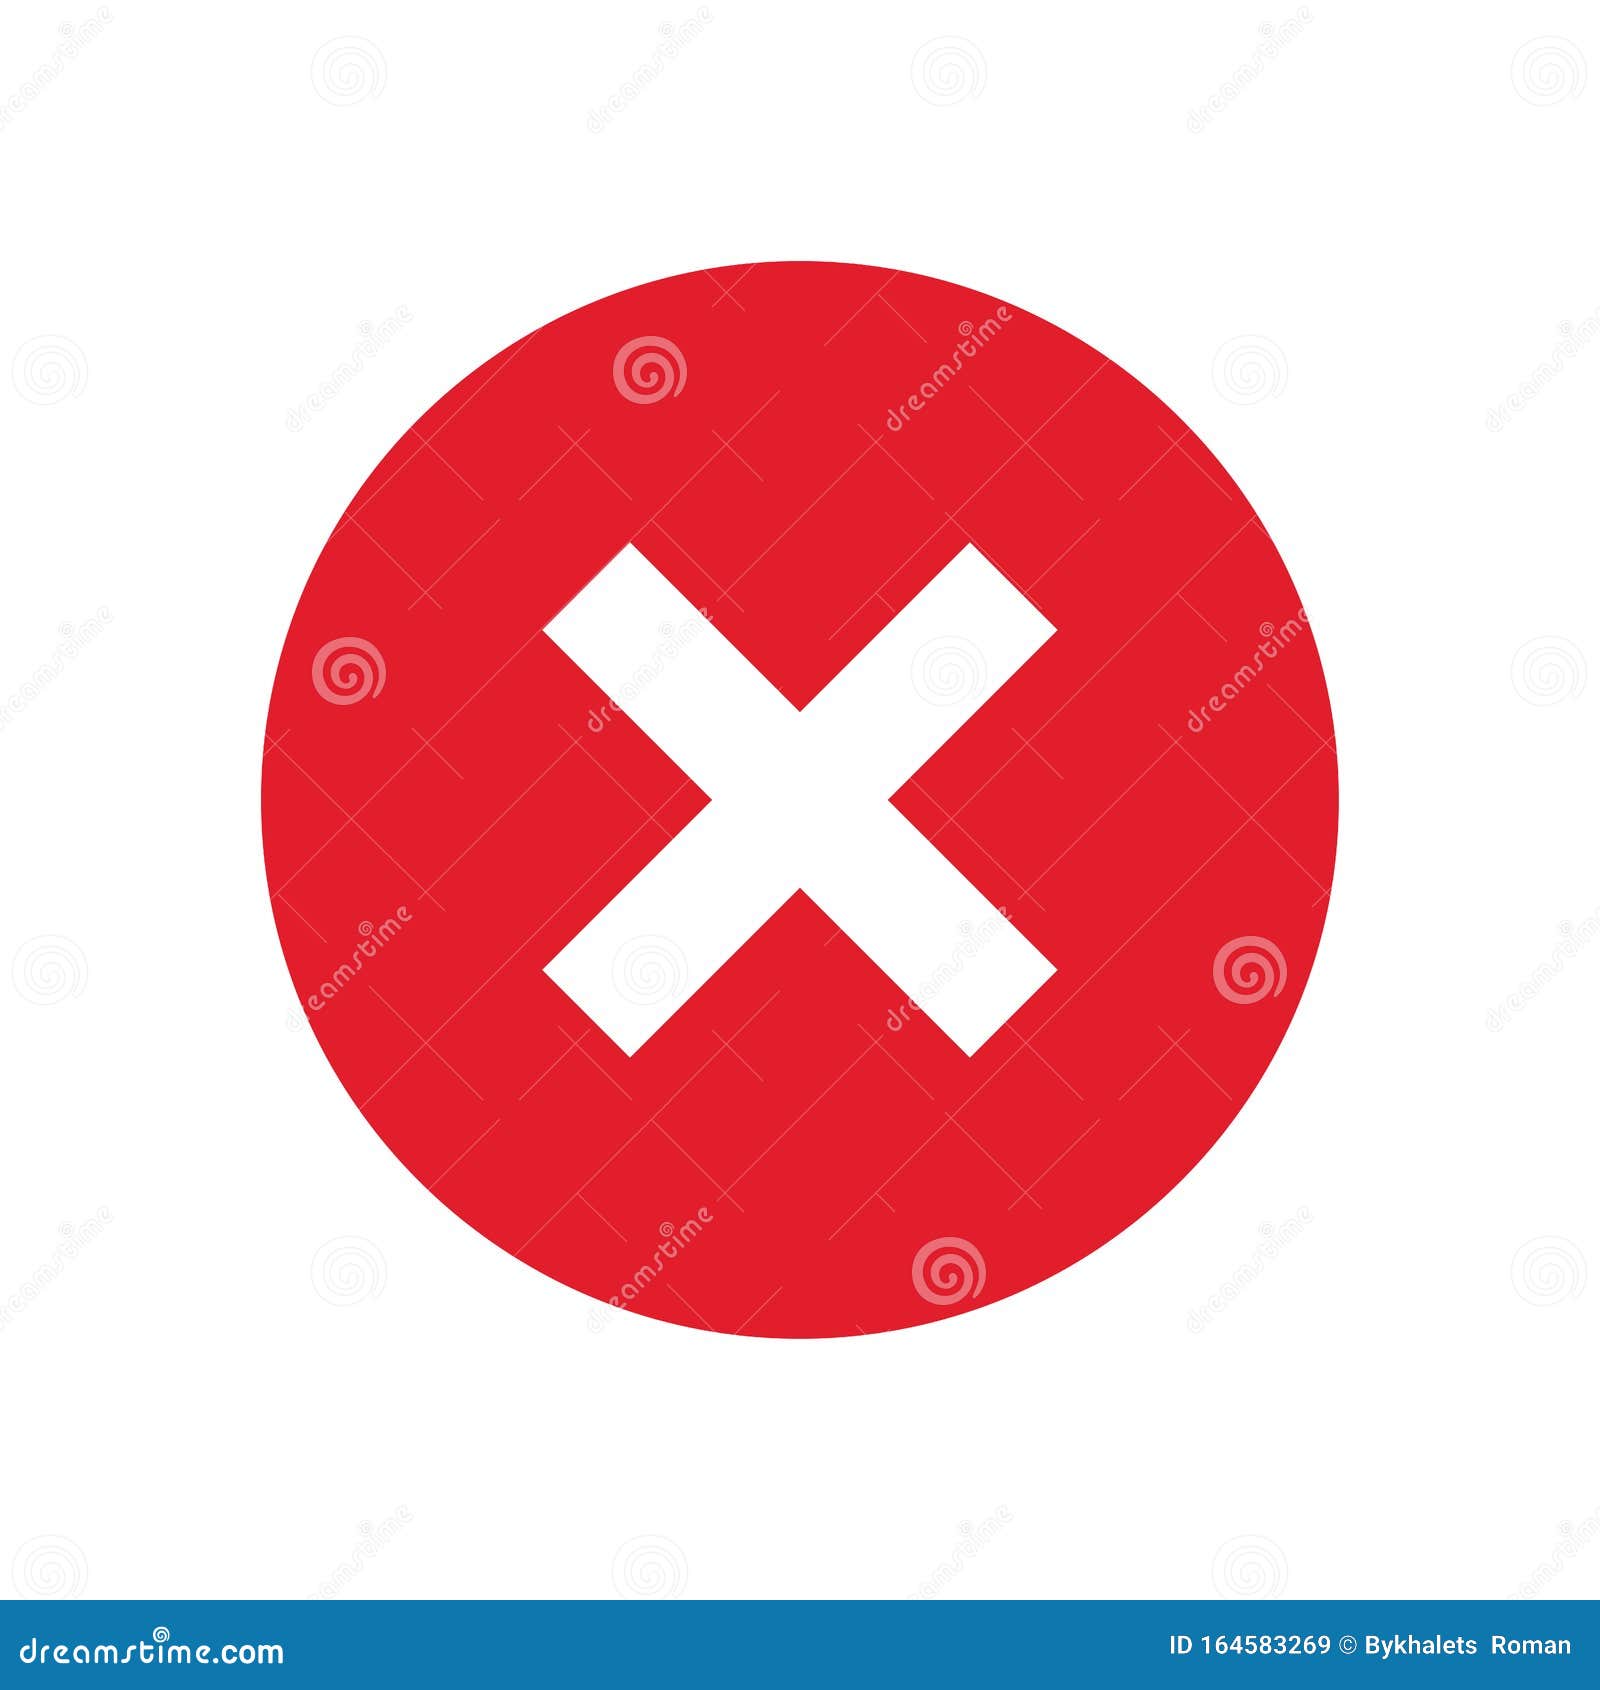 Nếu bạn đang tìm kiếm một biểu tượng độc đáo để chọn thì hãy xem hình liên quan đến Wrong Button Icon của chúng tôi! Đây là một trong những biểu tượng đáng yêu và thú vị nhất mà bạn từng thấy.